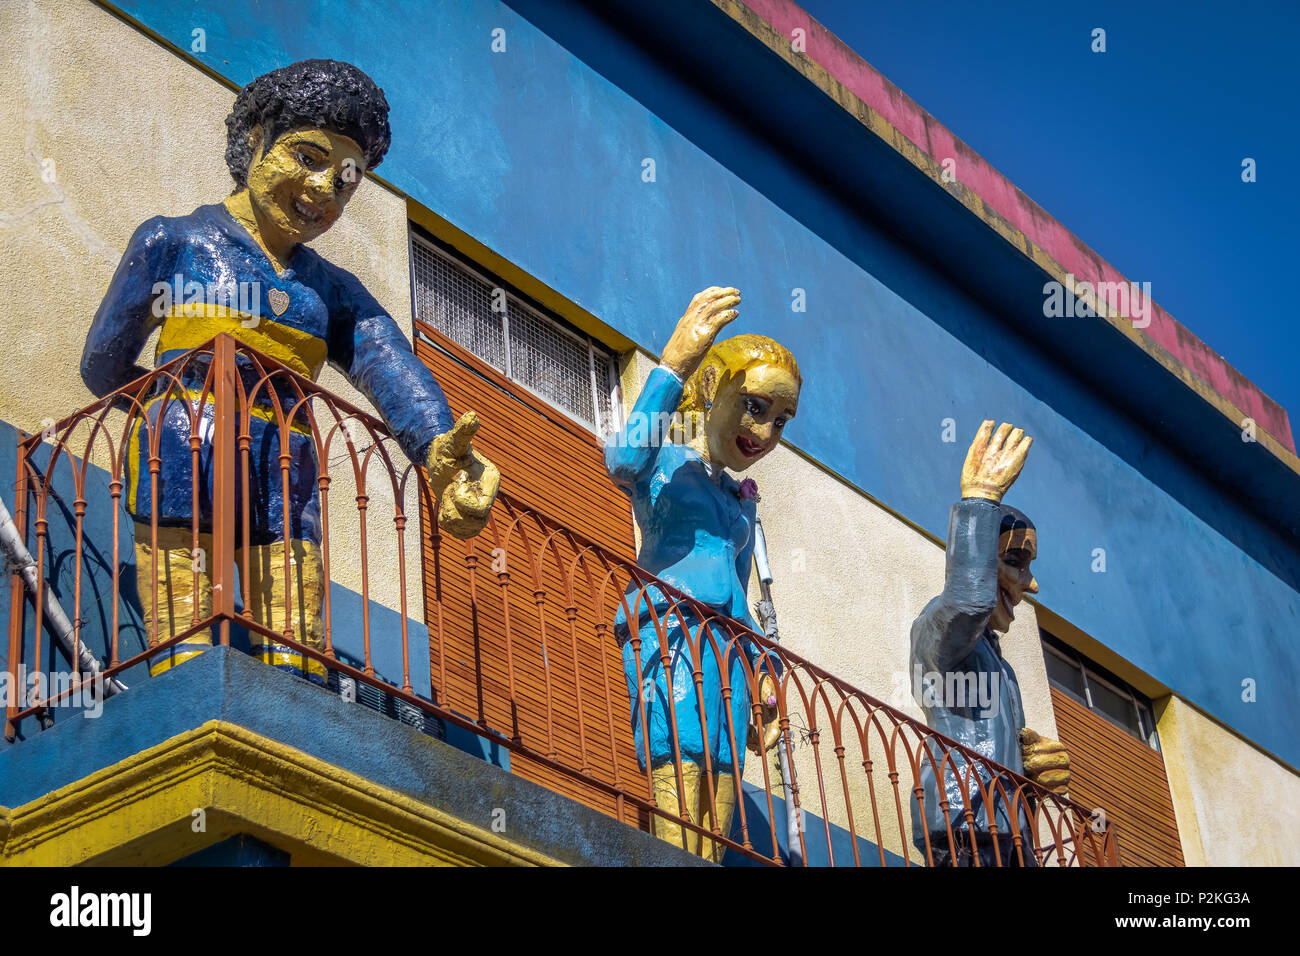 Farbenfrohe Gebäude im Viertel La Boca, Buenos Aires, Argentinien Stockfoto